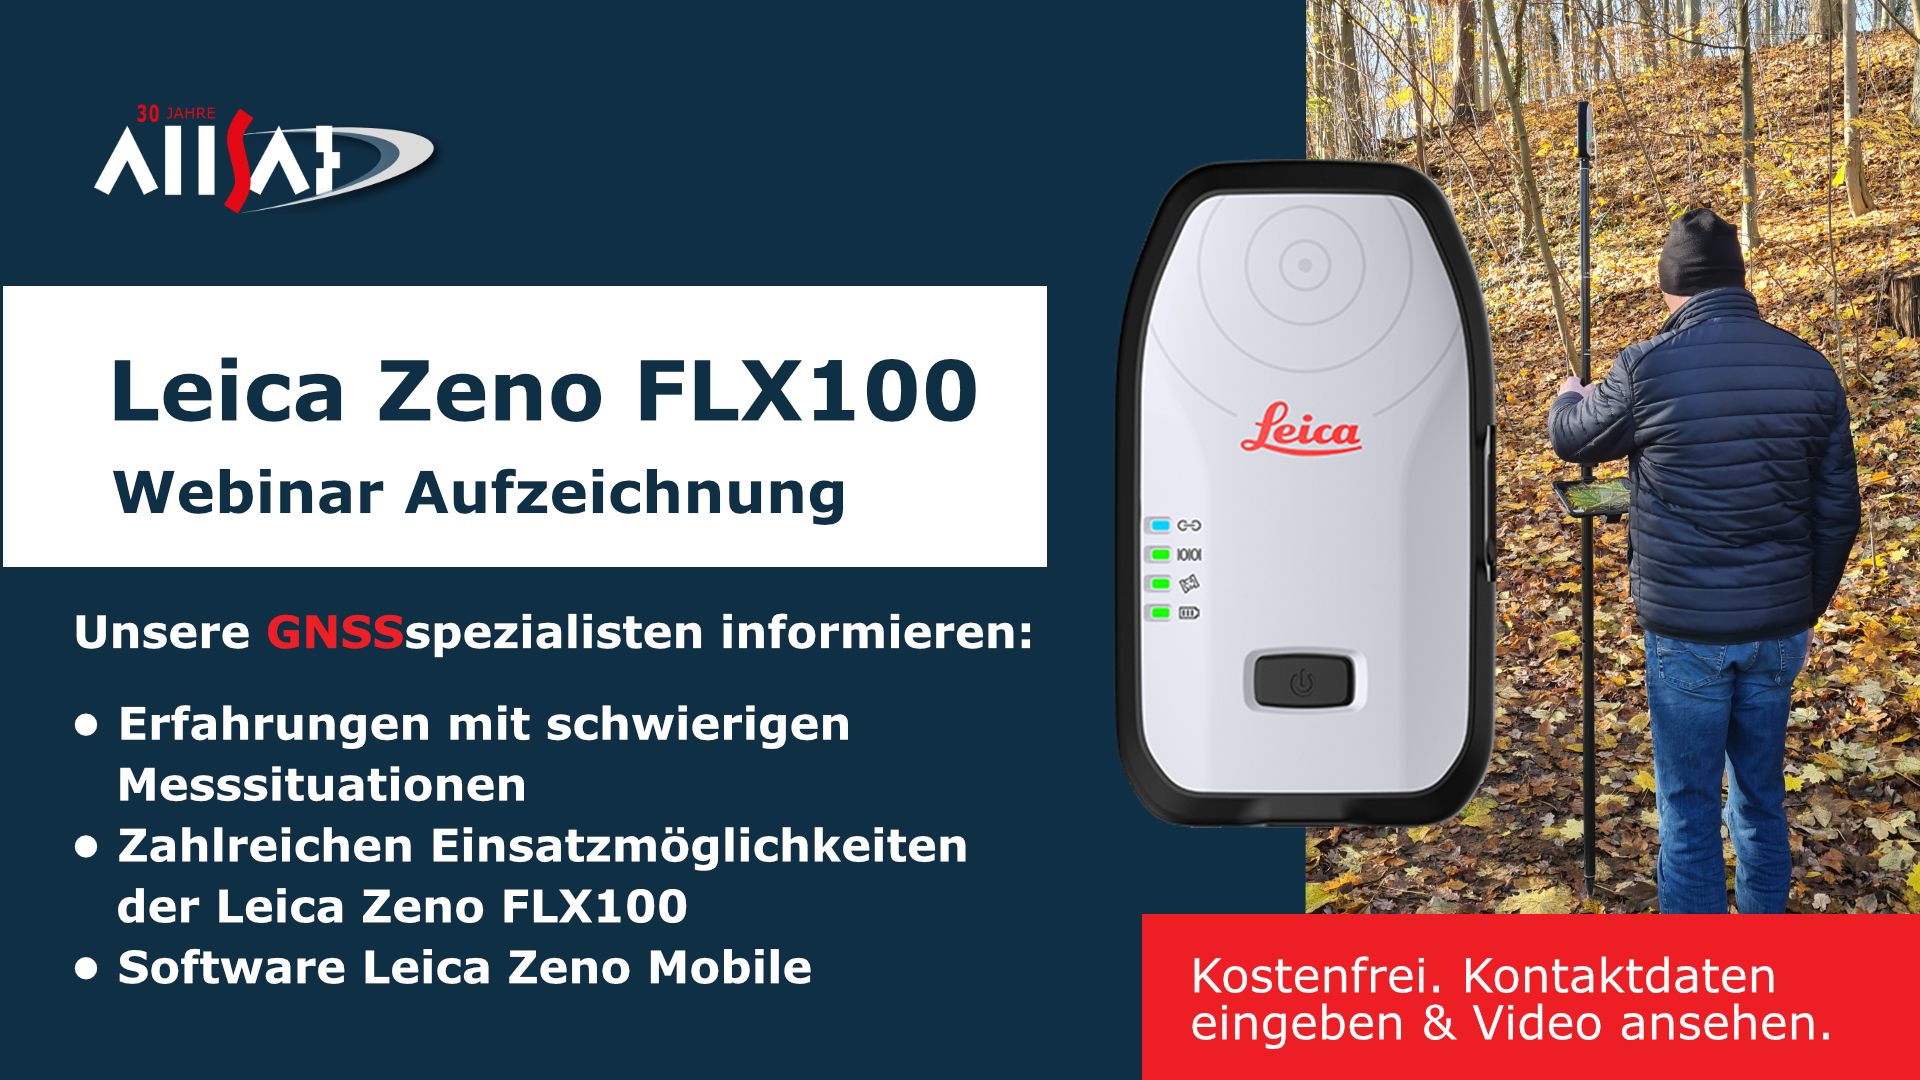 ALLSAT Webinar Aufzeichnung - Leica Zeno FLX100